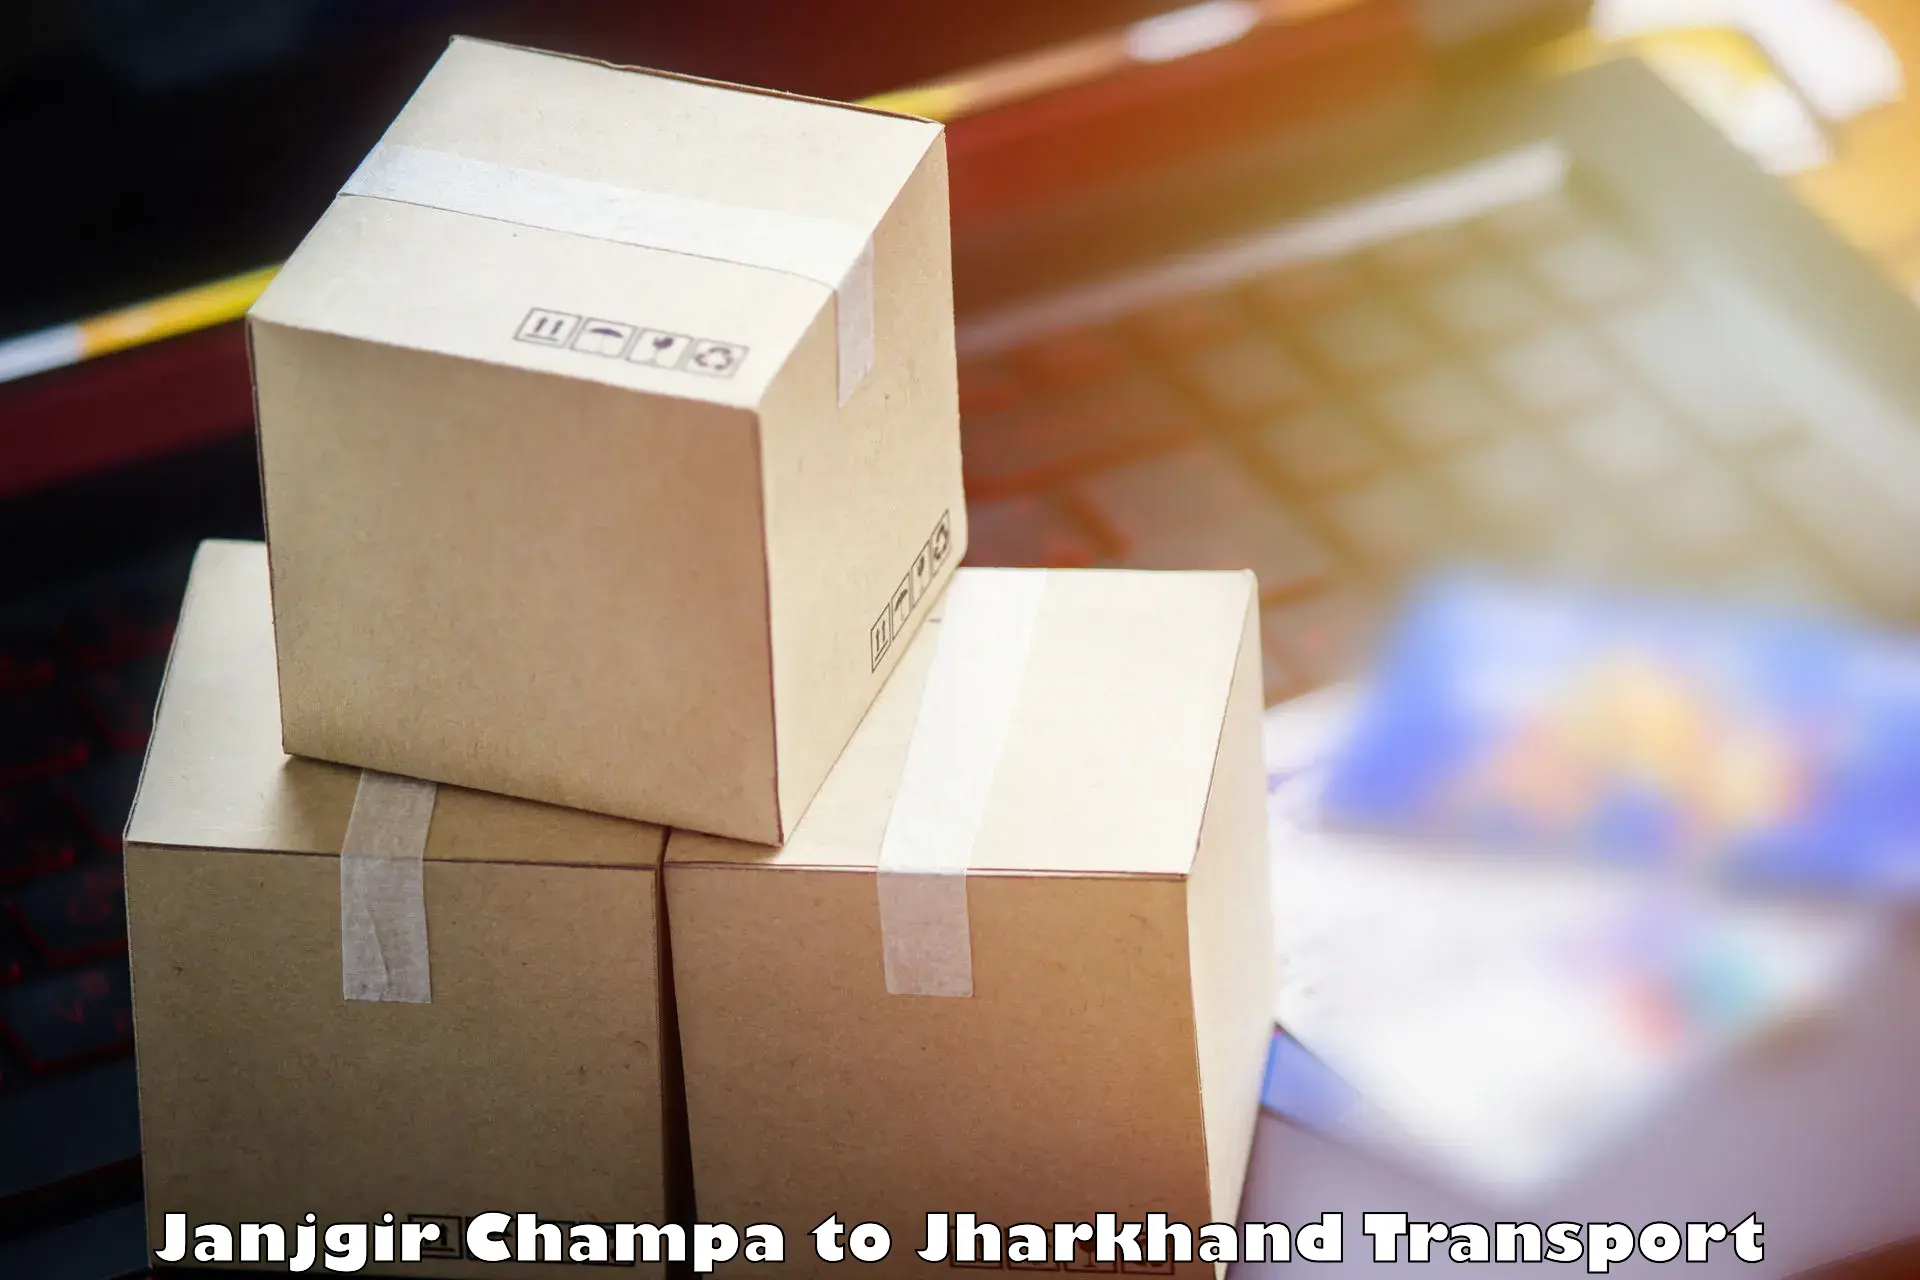 Furniture transport service Janjgir Champa to Daltonganj